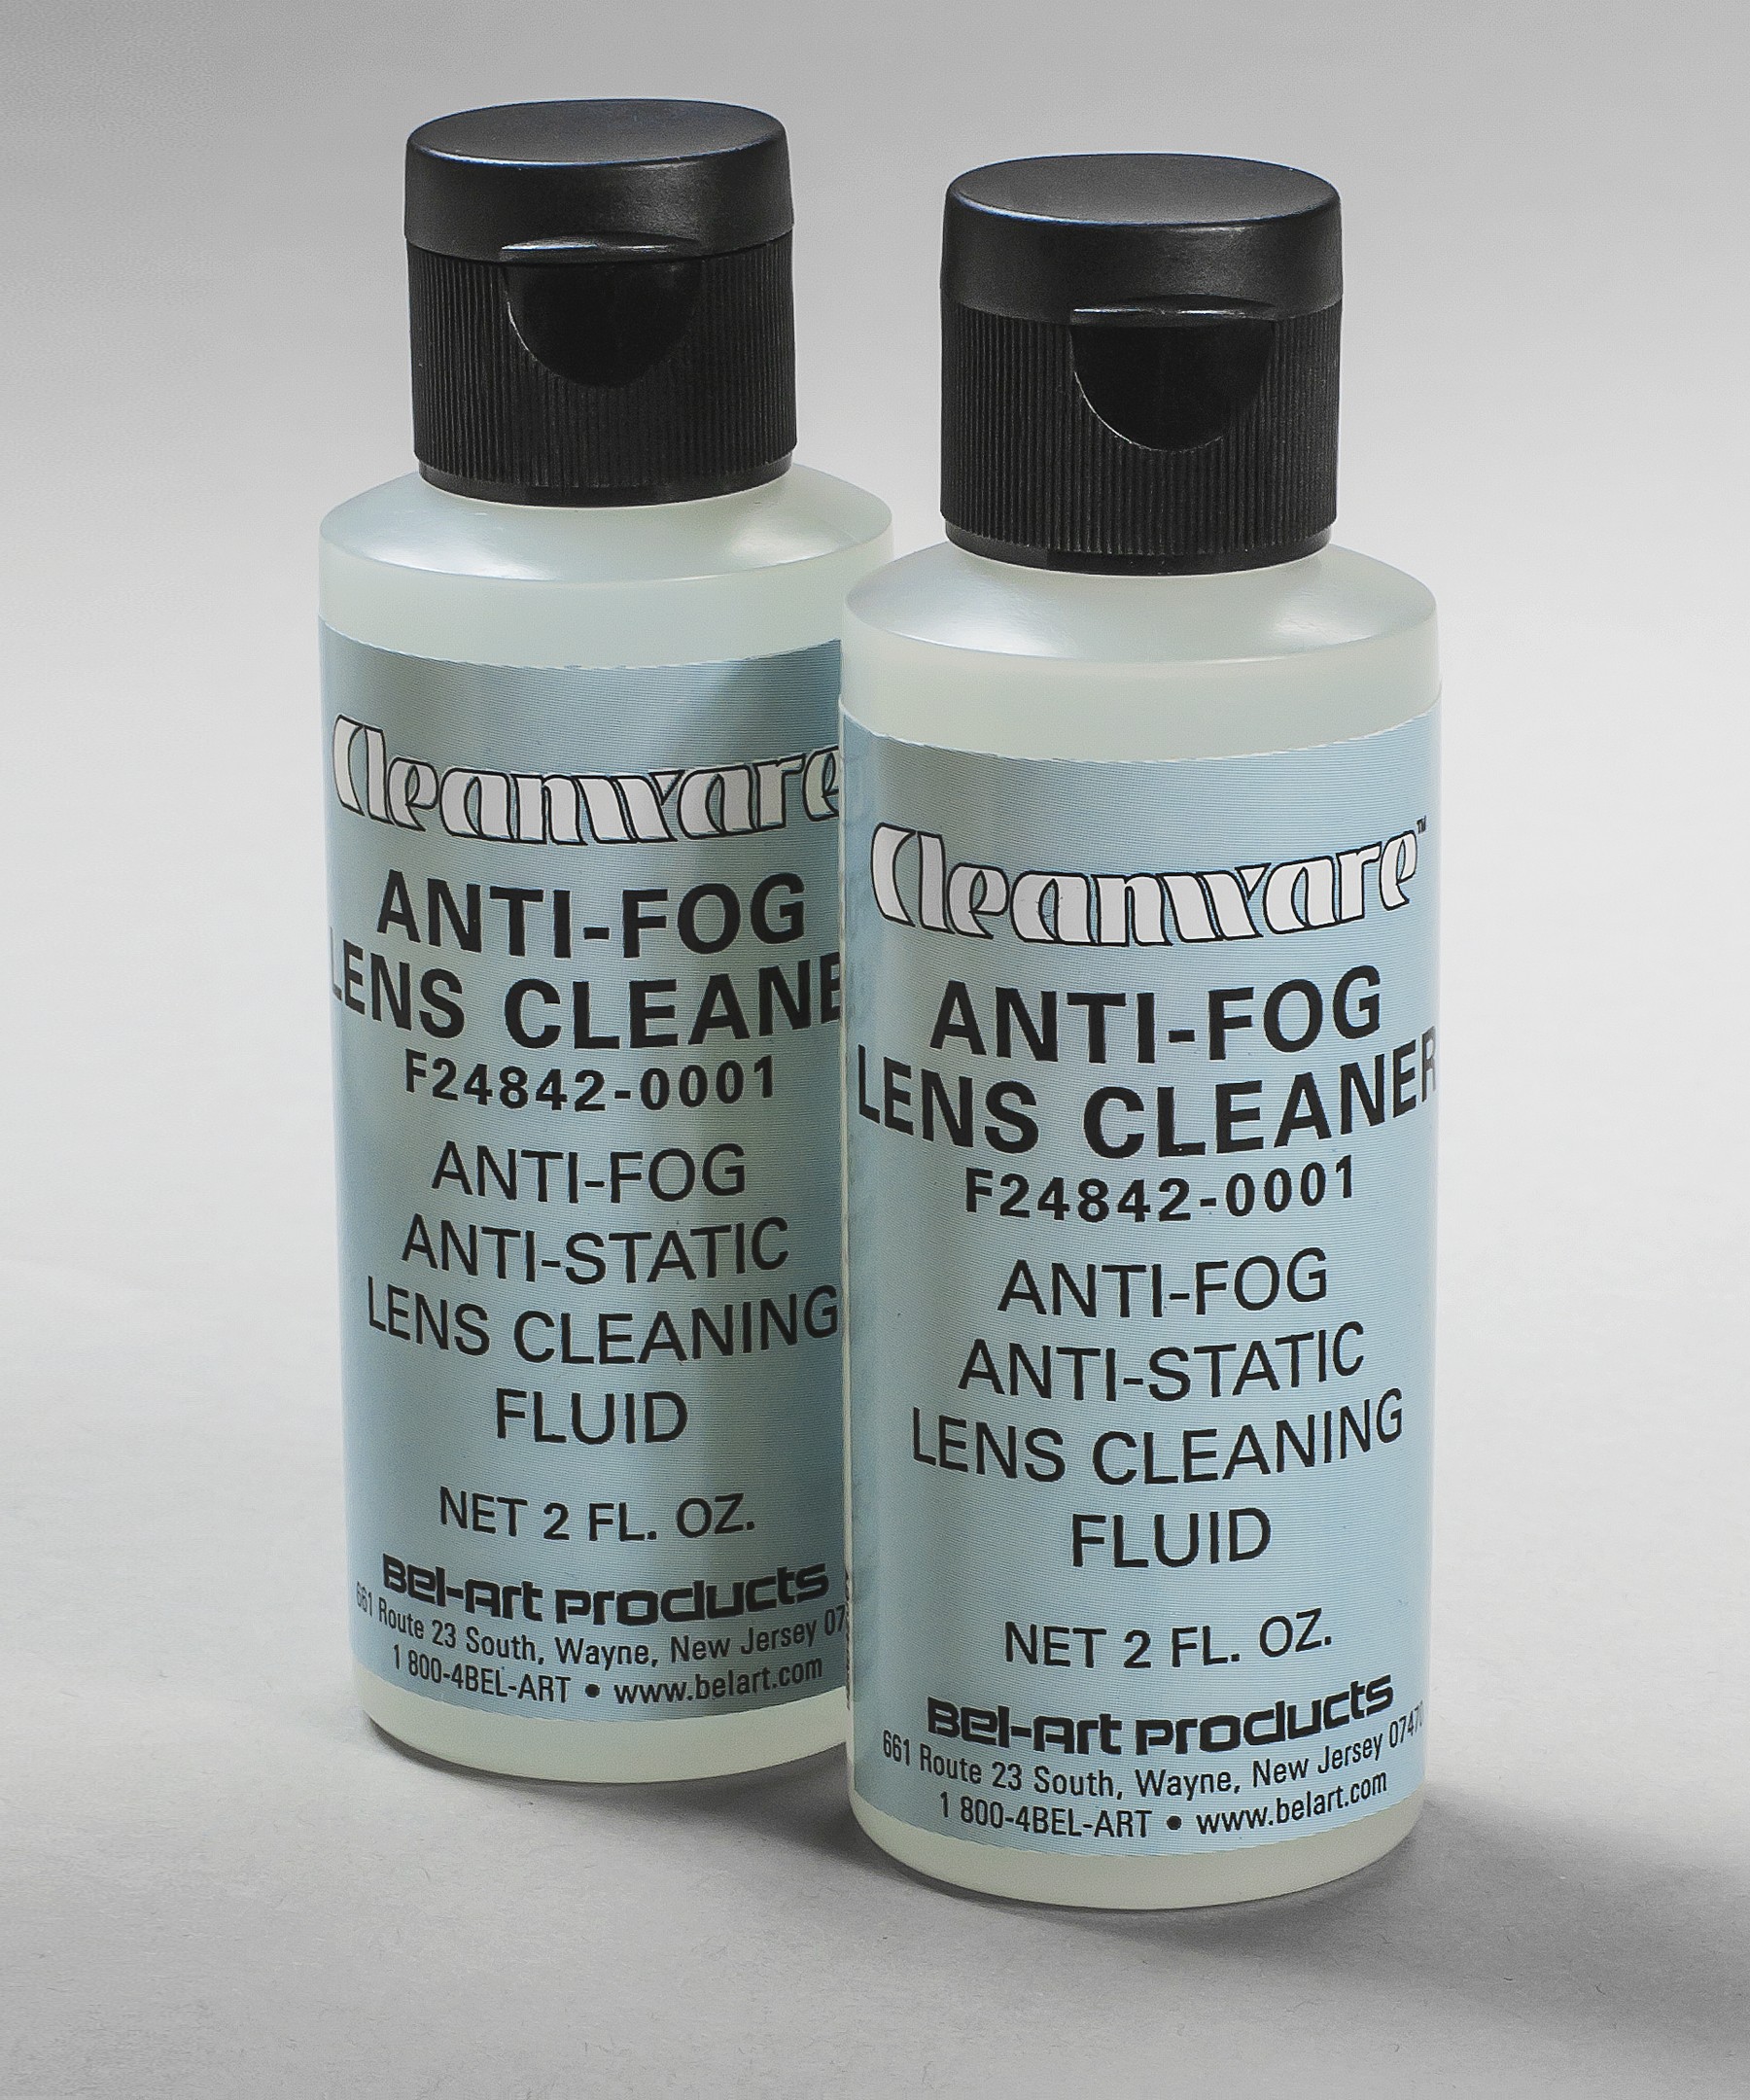 SP Bel-Art Cleanware Anti-Fog Lens Cleaner (Pack of 2)